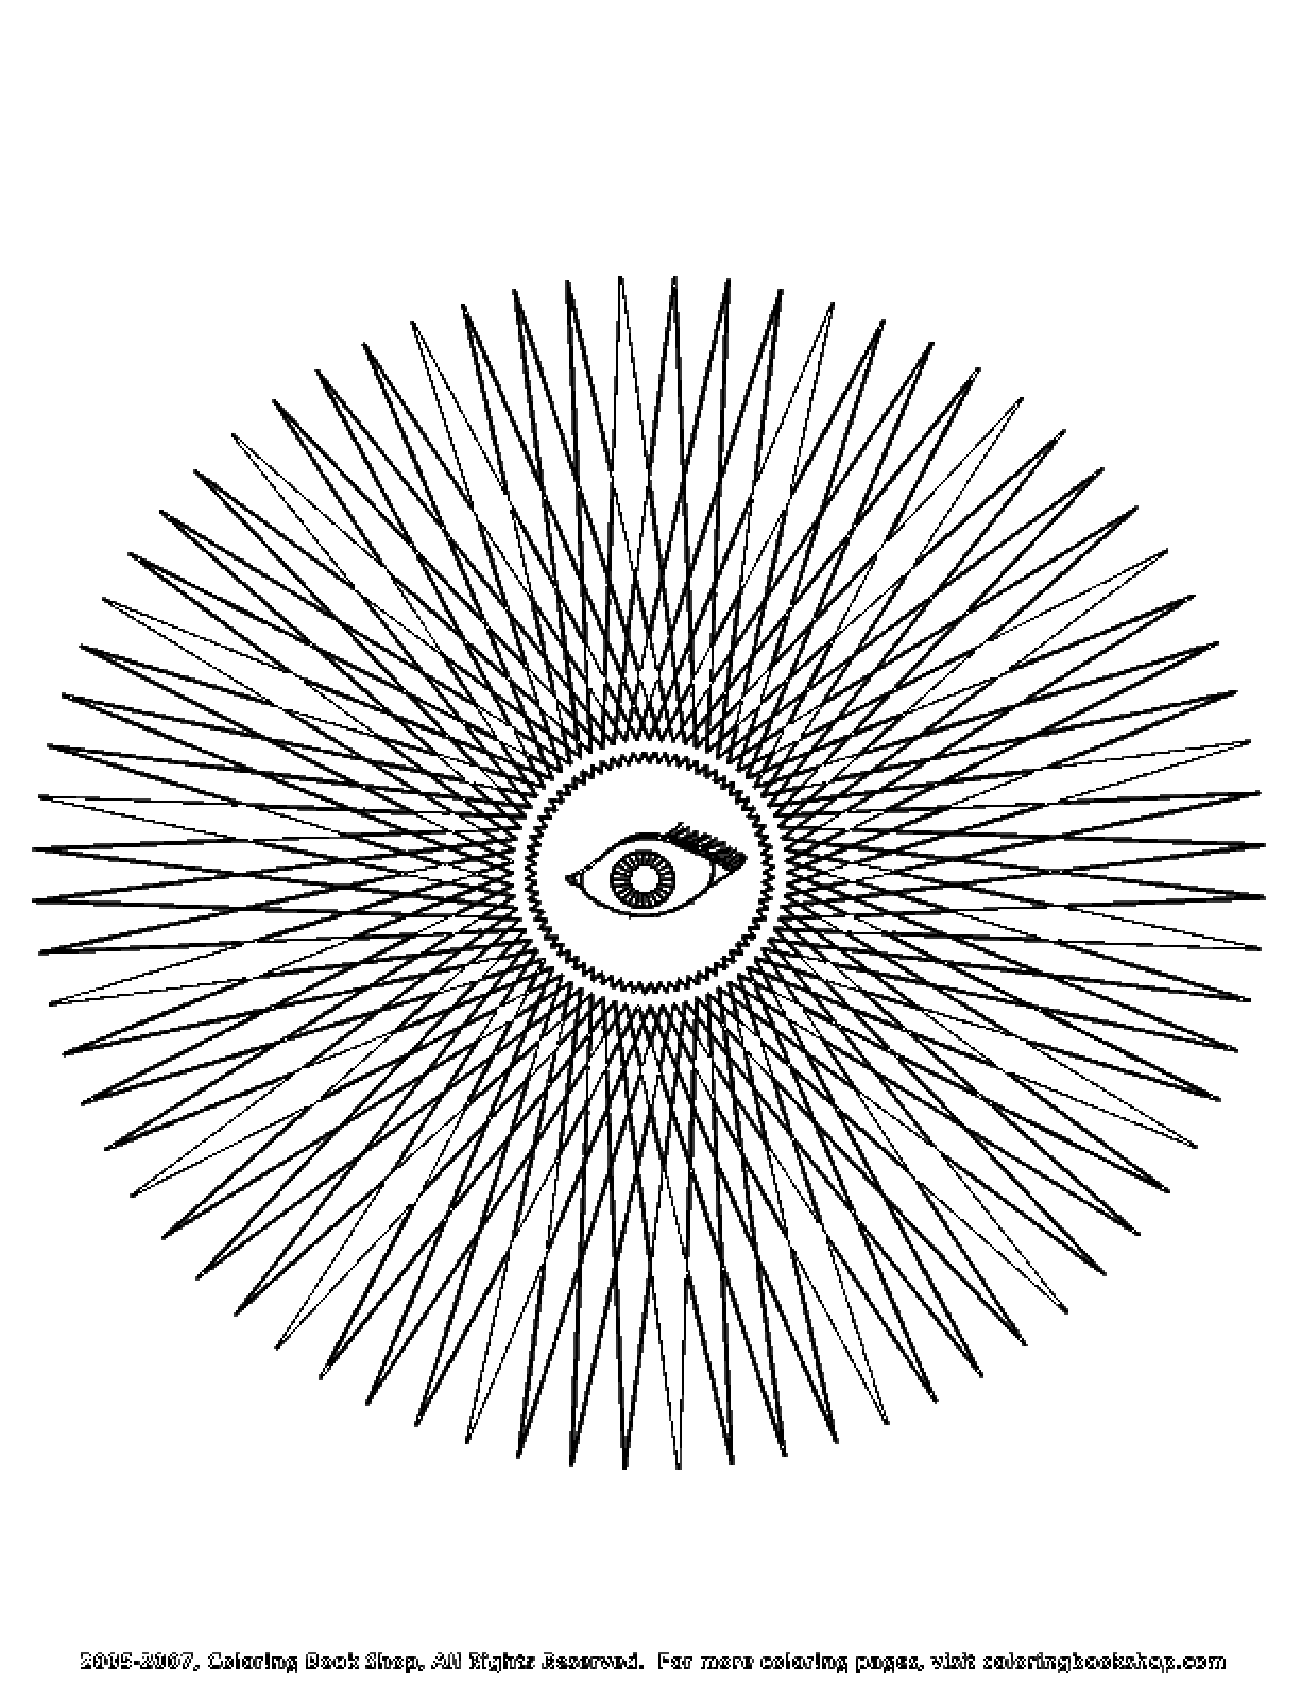 Un mandala molto originale che raffigura un occhio in primo piano e una successione di losanghe che si estendono da esso.